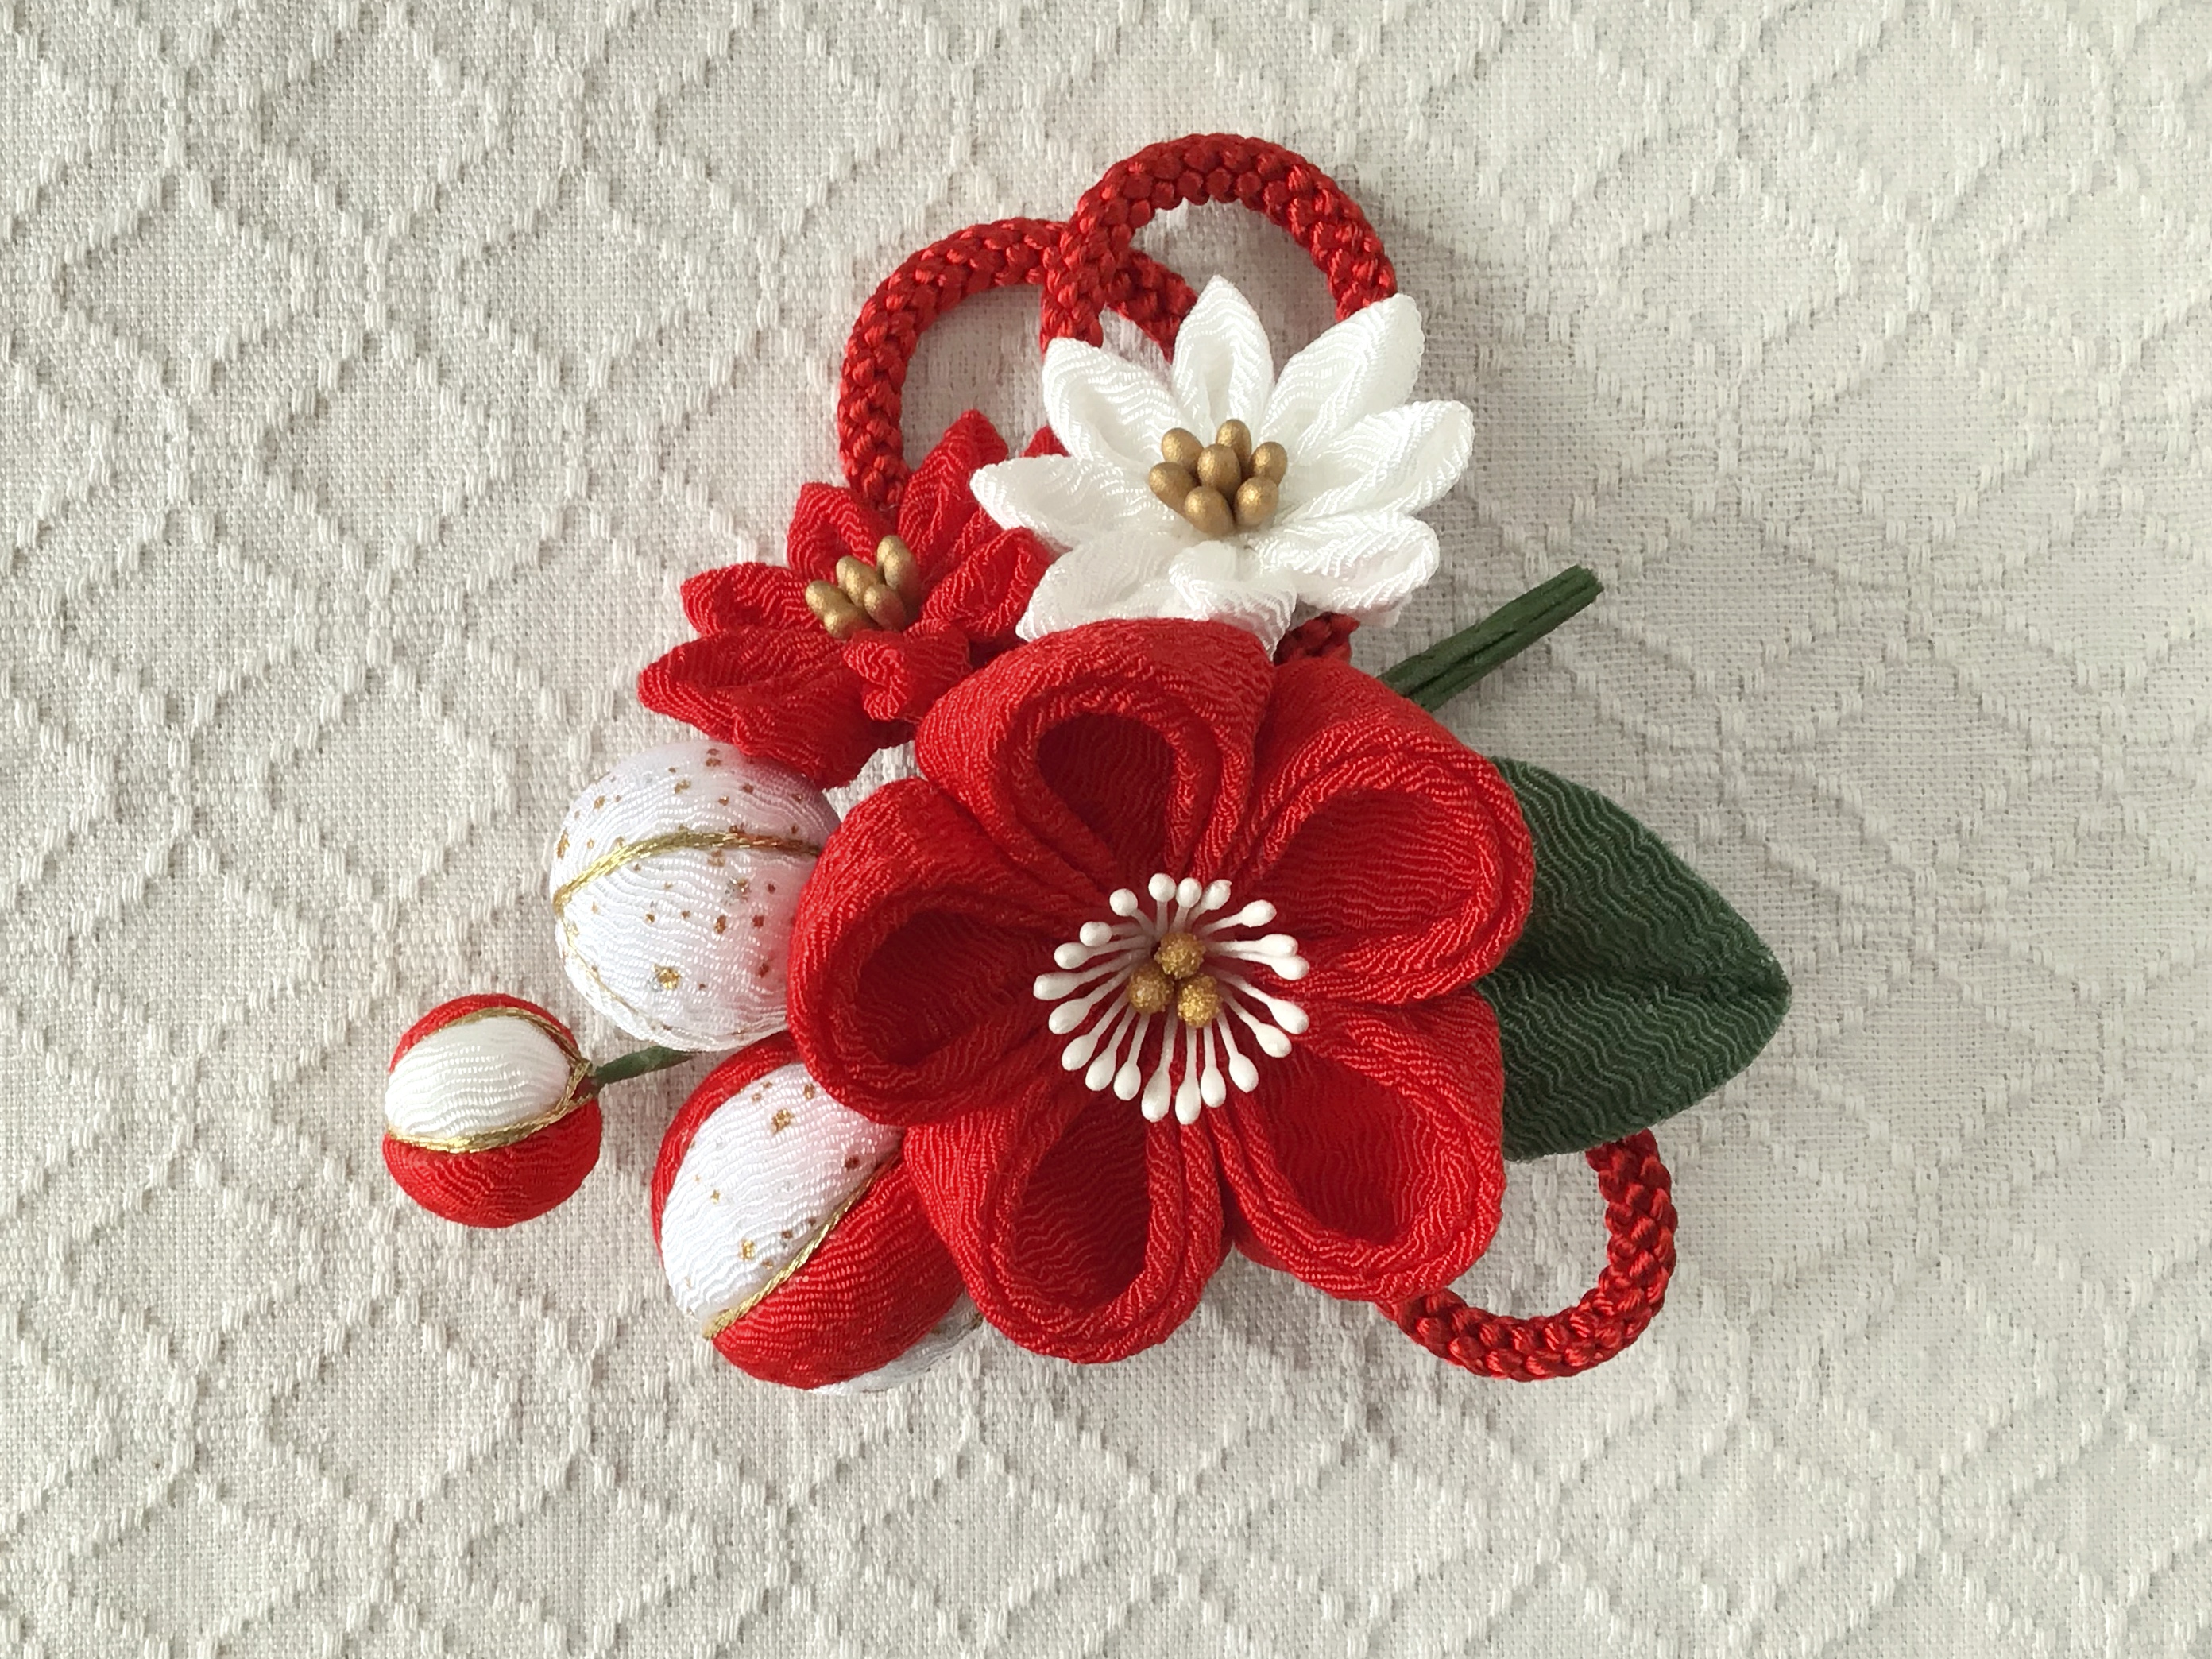 つまみ細工 梅中輪と小菊とちりめん玉の髪飾り 赤 Iichi ハンドメイド クラフト作品 手仕事品の通販